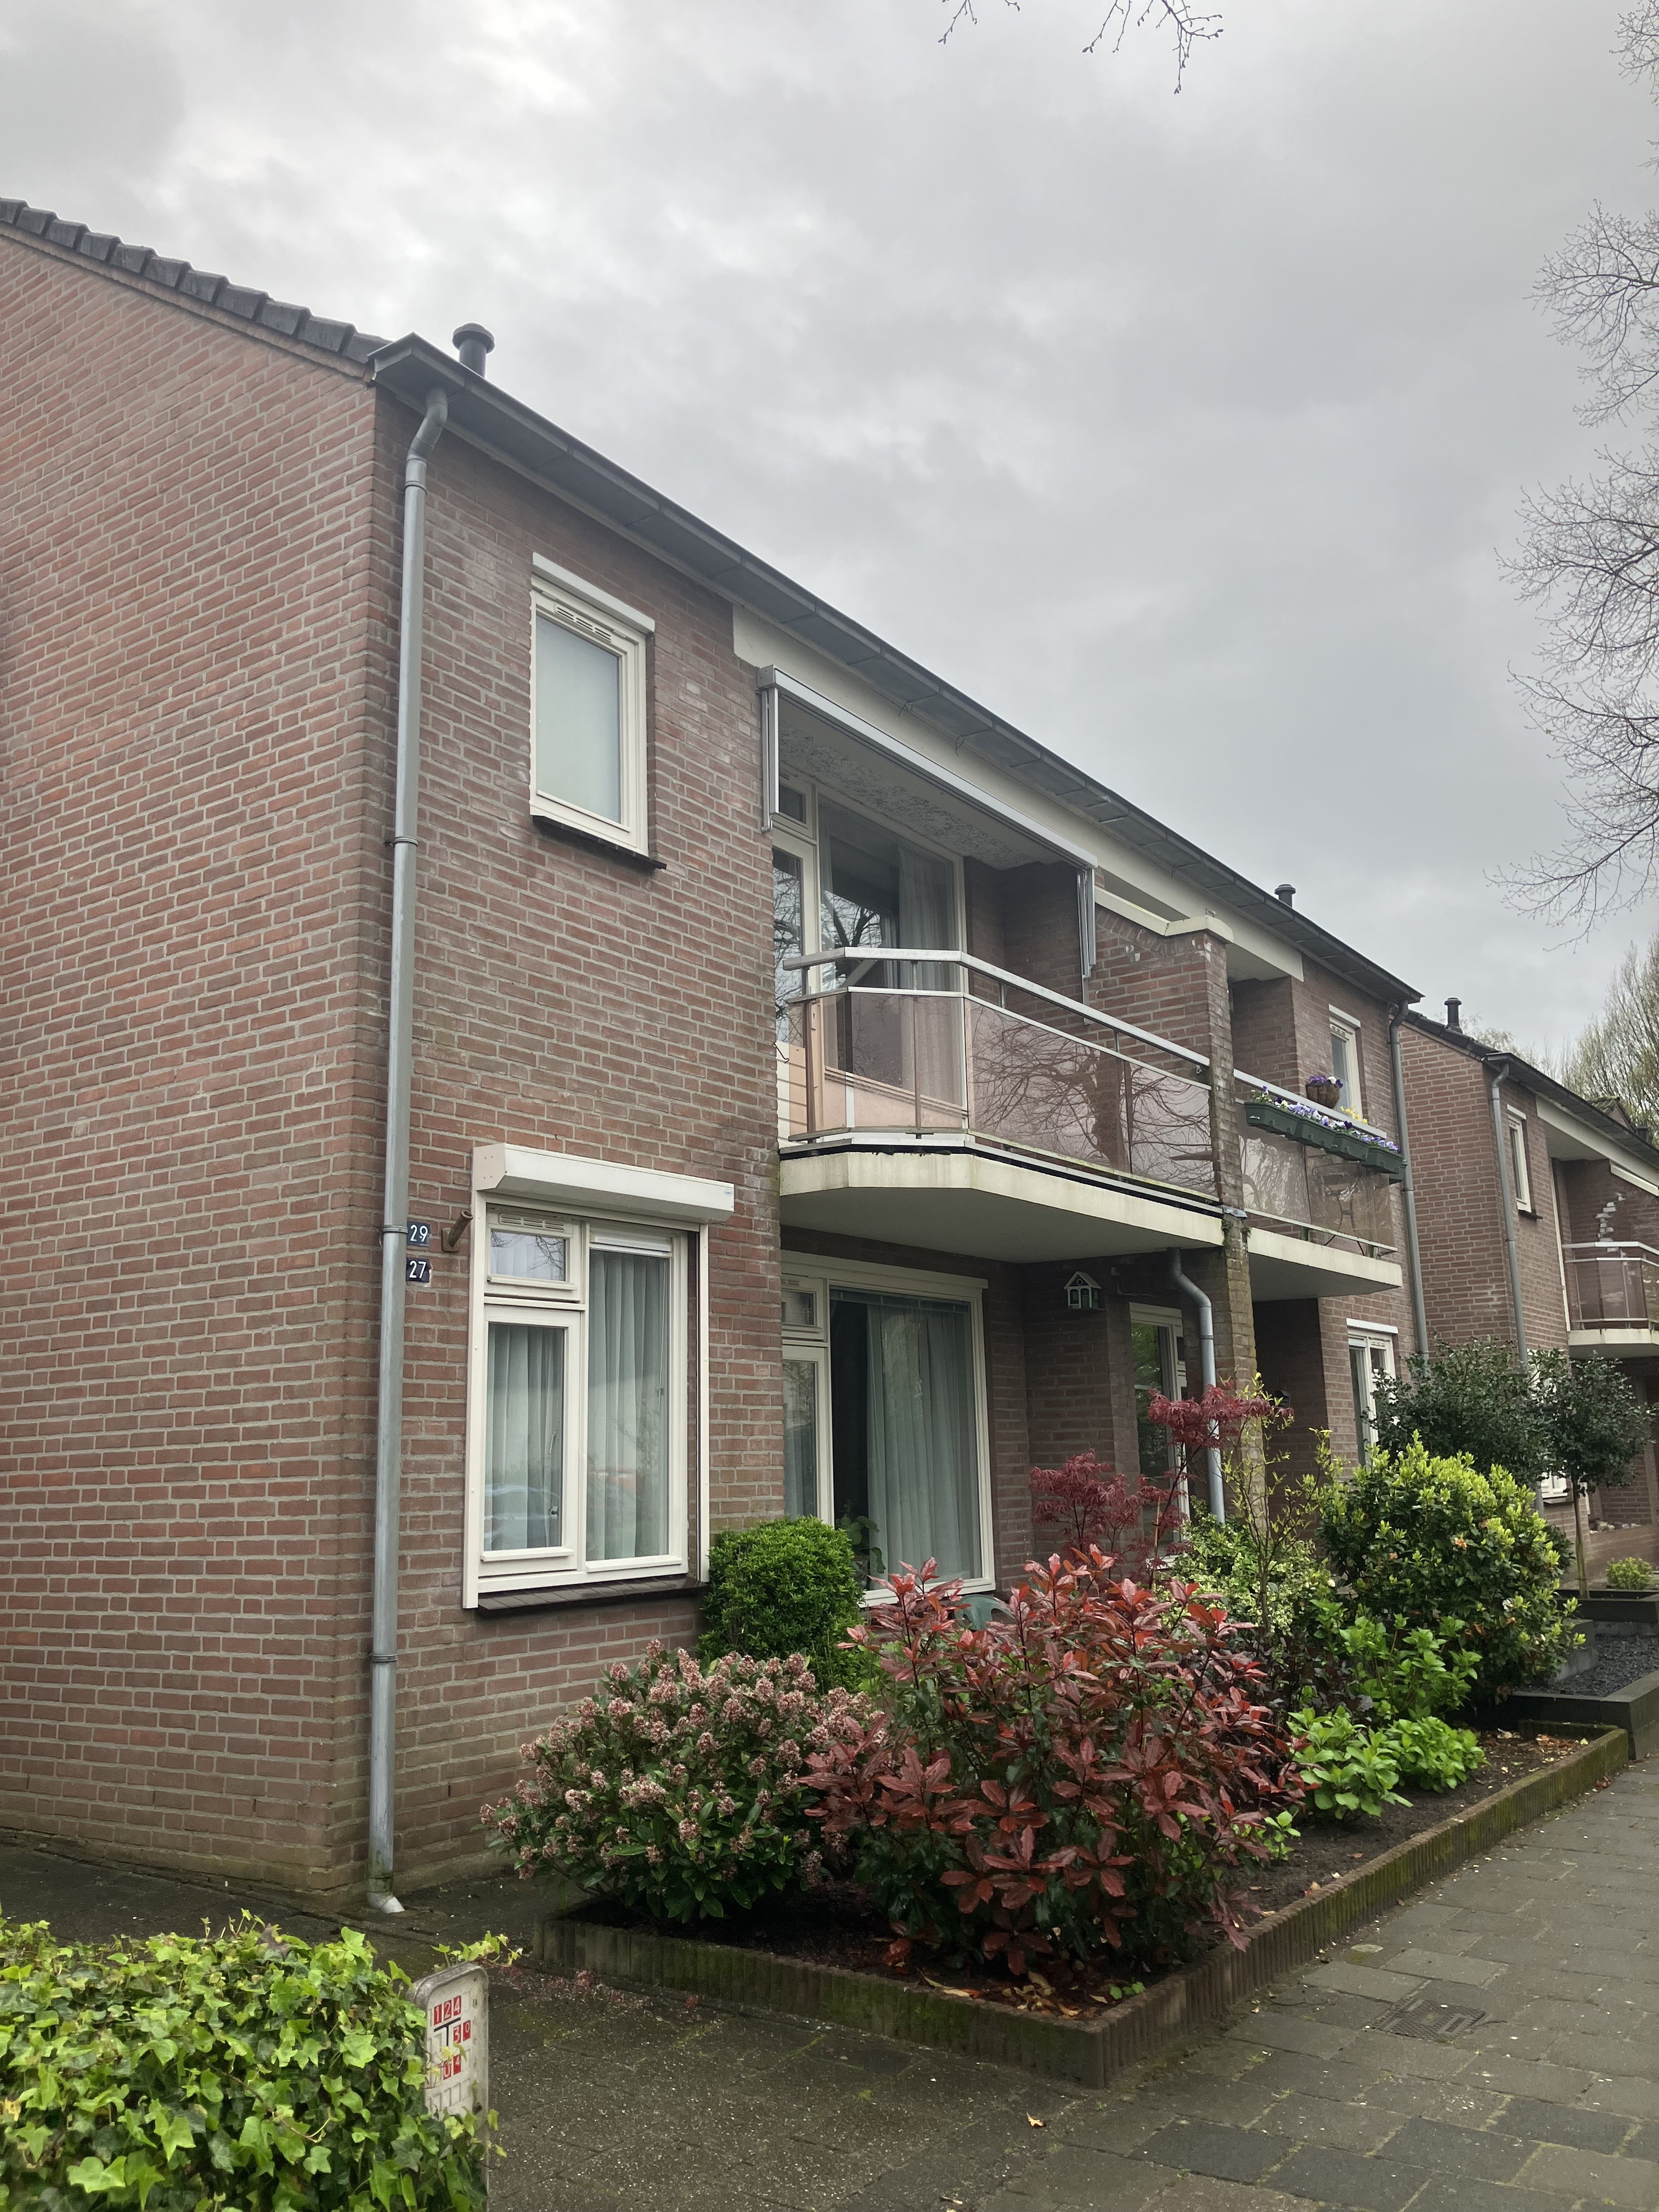 Scheepersdijk 29, 5062 EA Oisterwijk, Nederland